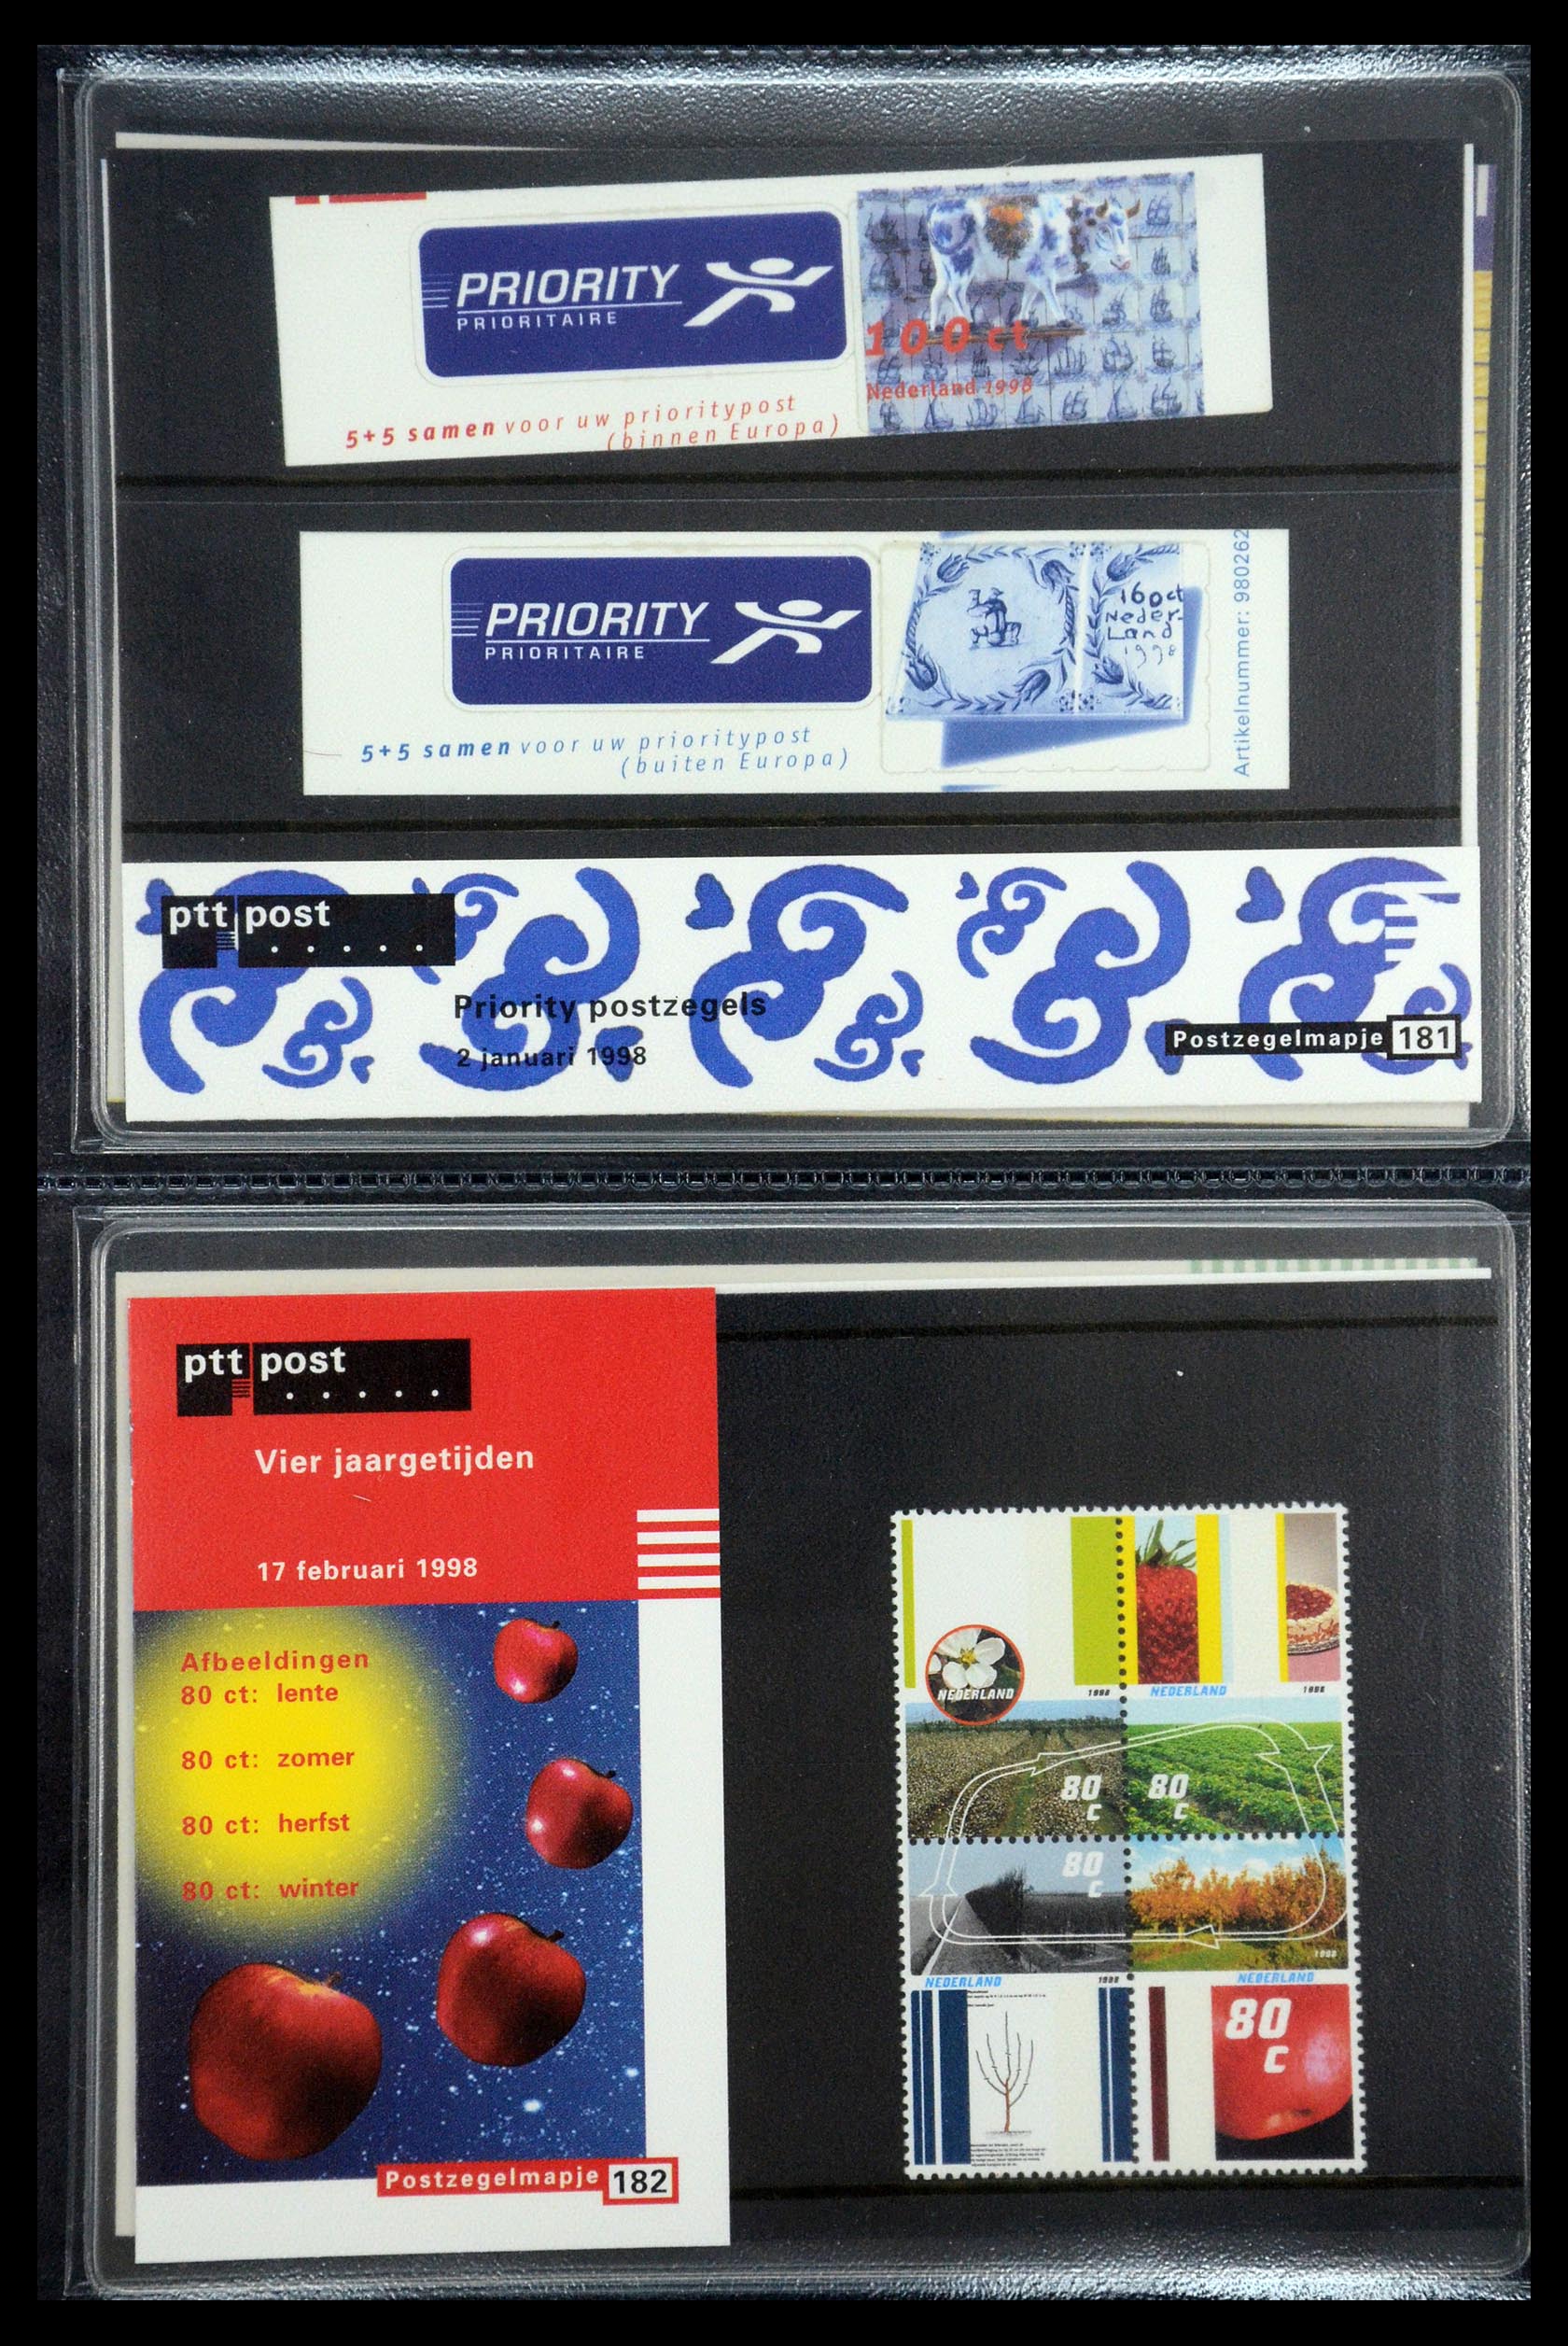 35187 093 - Stamp Collection 35187 Netherlands PTT presentation packs 1982-2019!